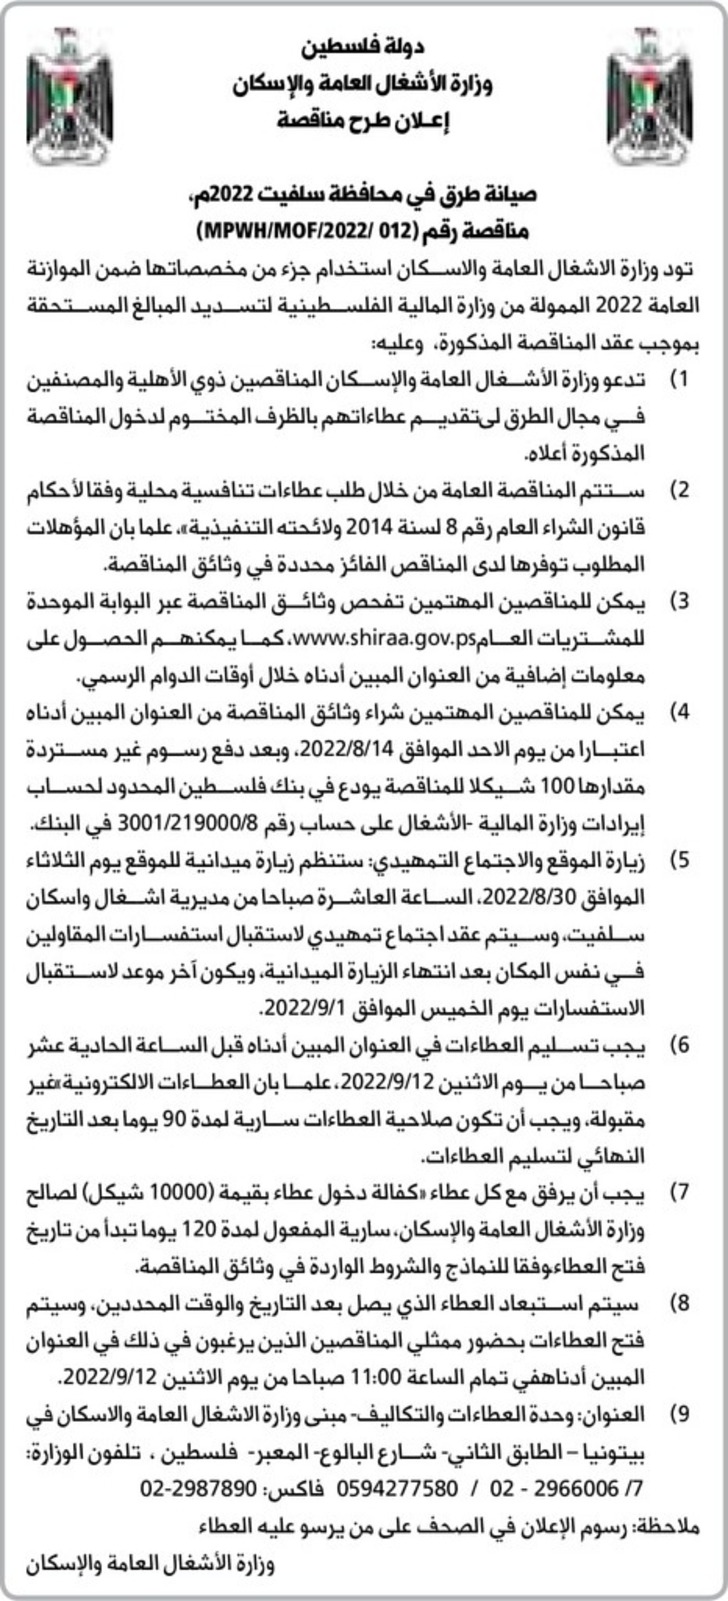 صيانة طرق في محافظة سلفيت 2022